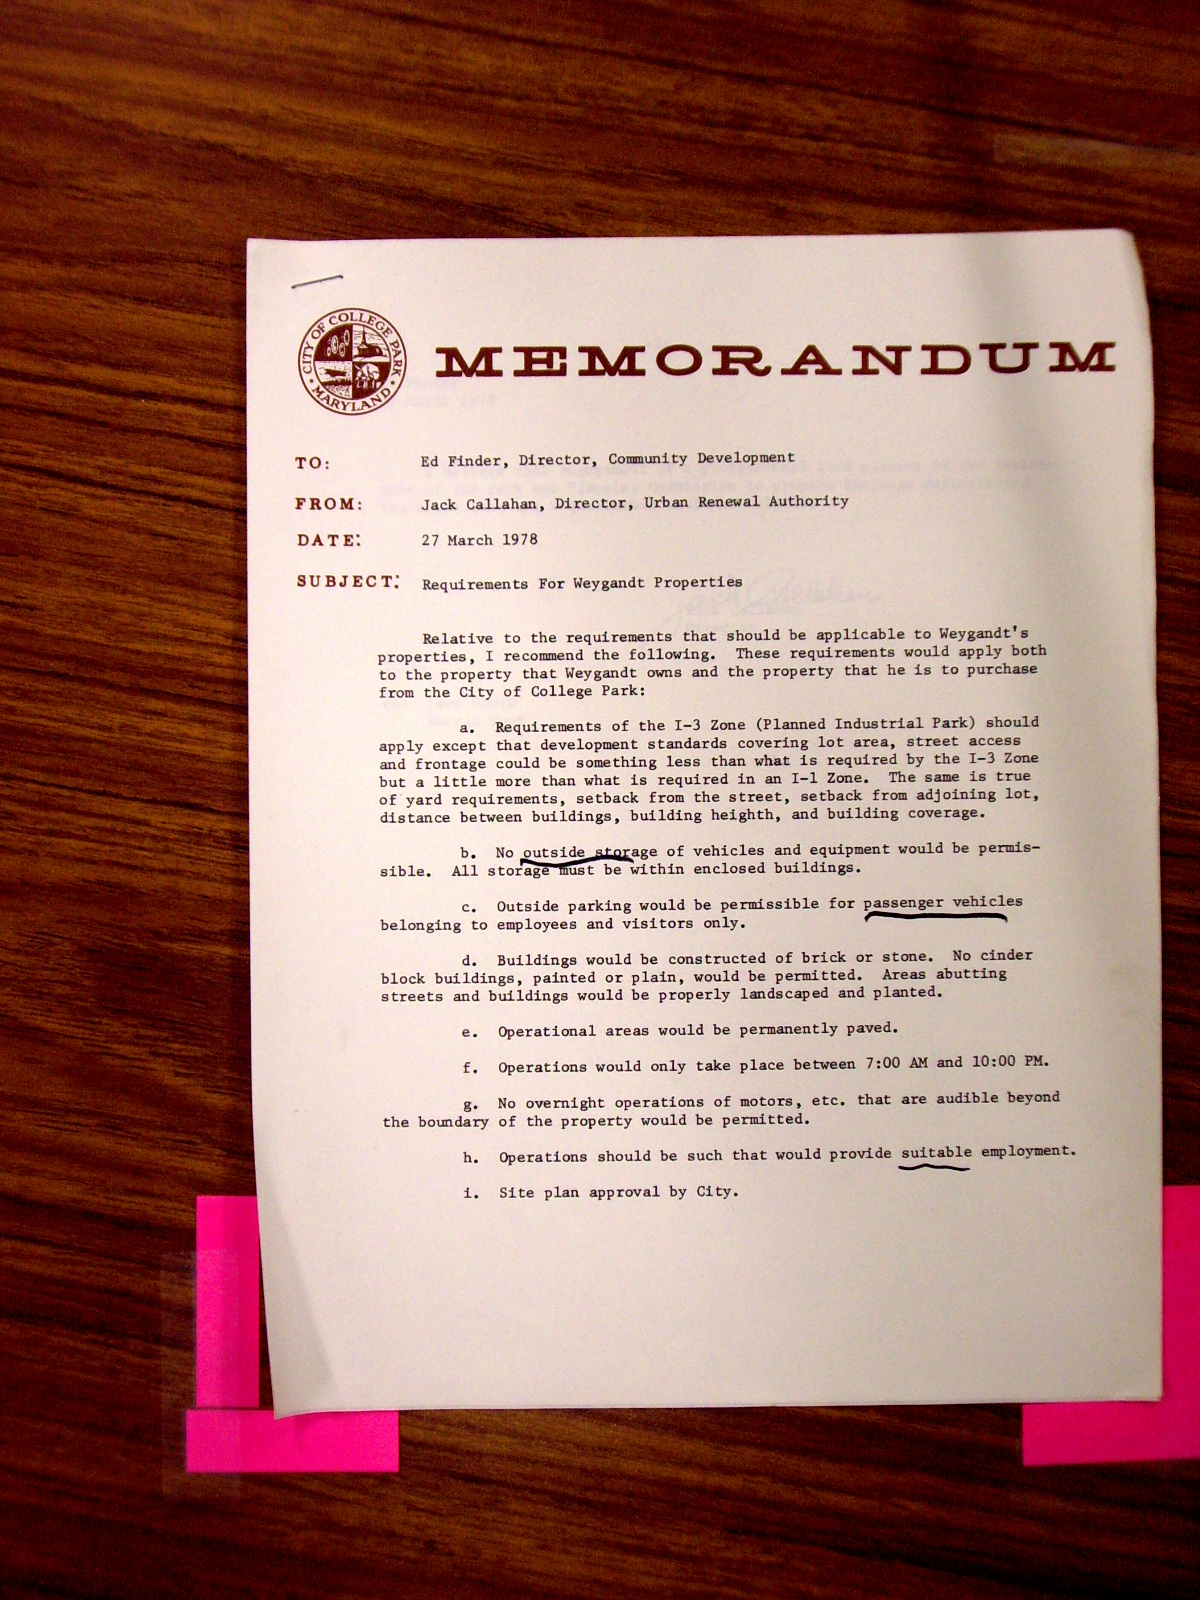 Memorandum to Ed Finder from Jack Callahan, subject, Requirements for Weygandt Properties